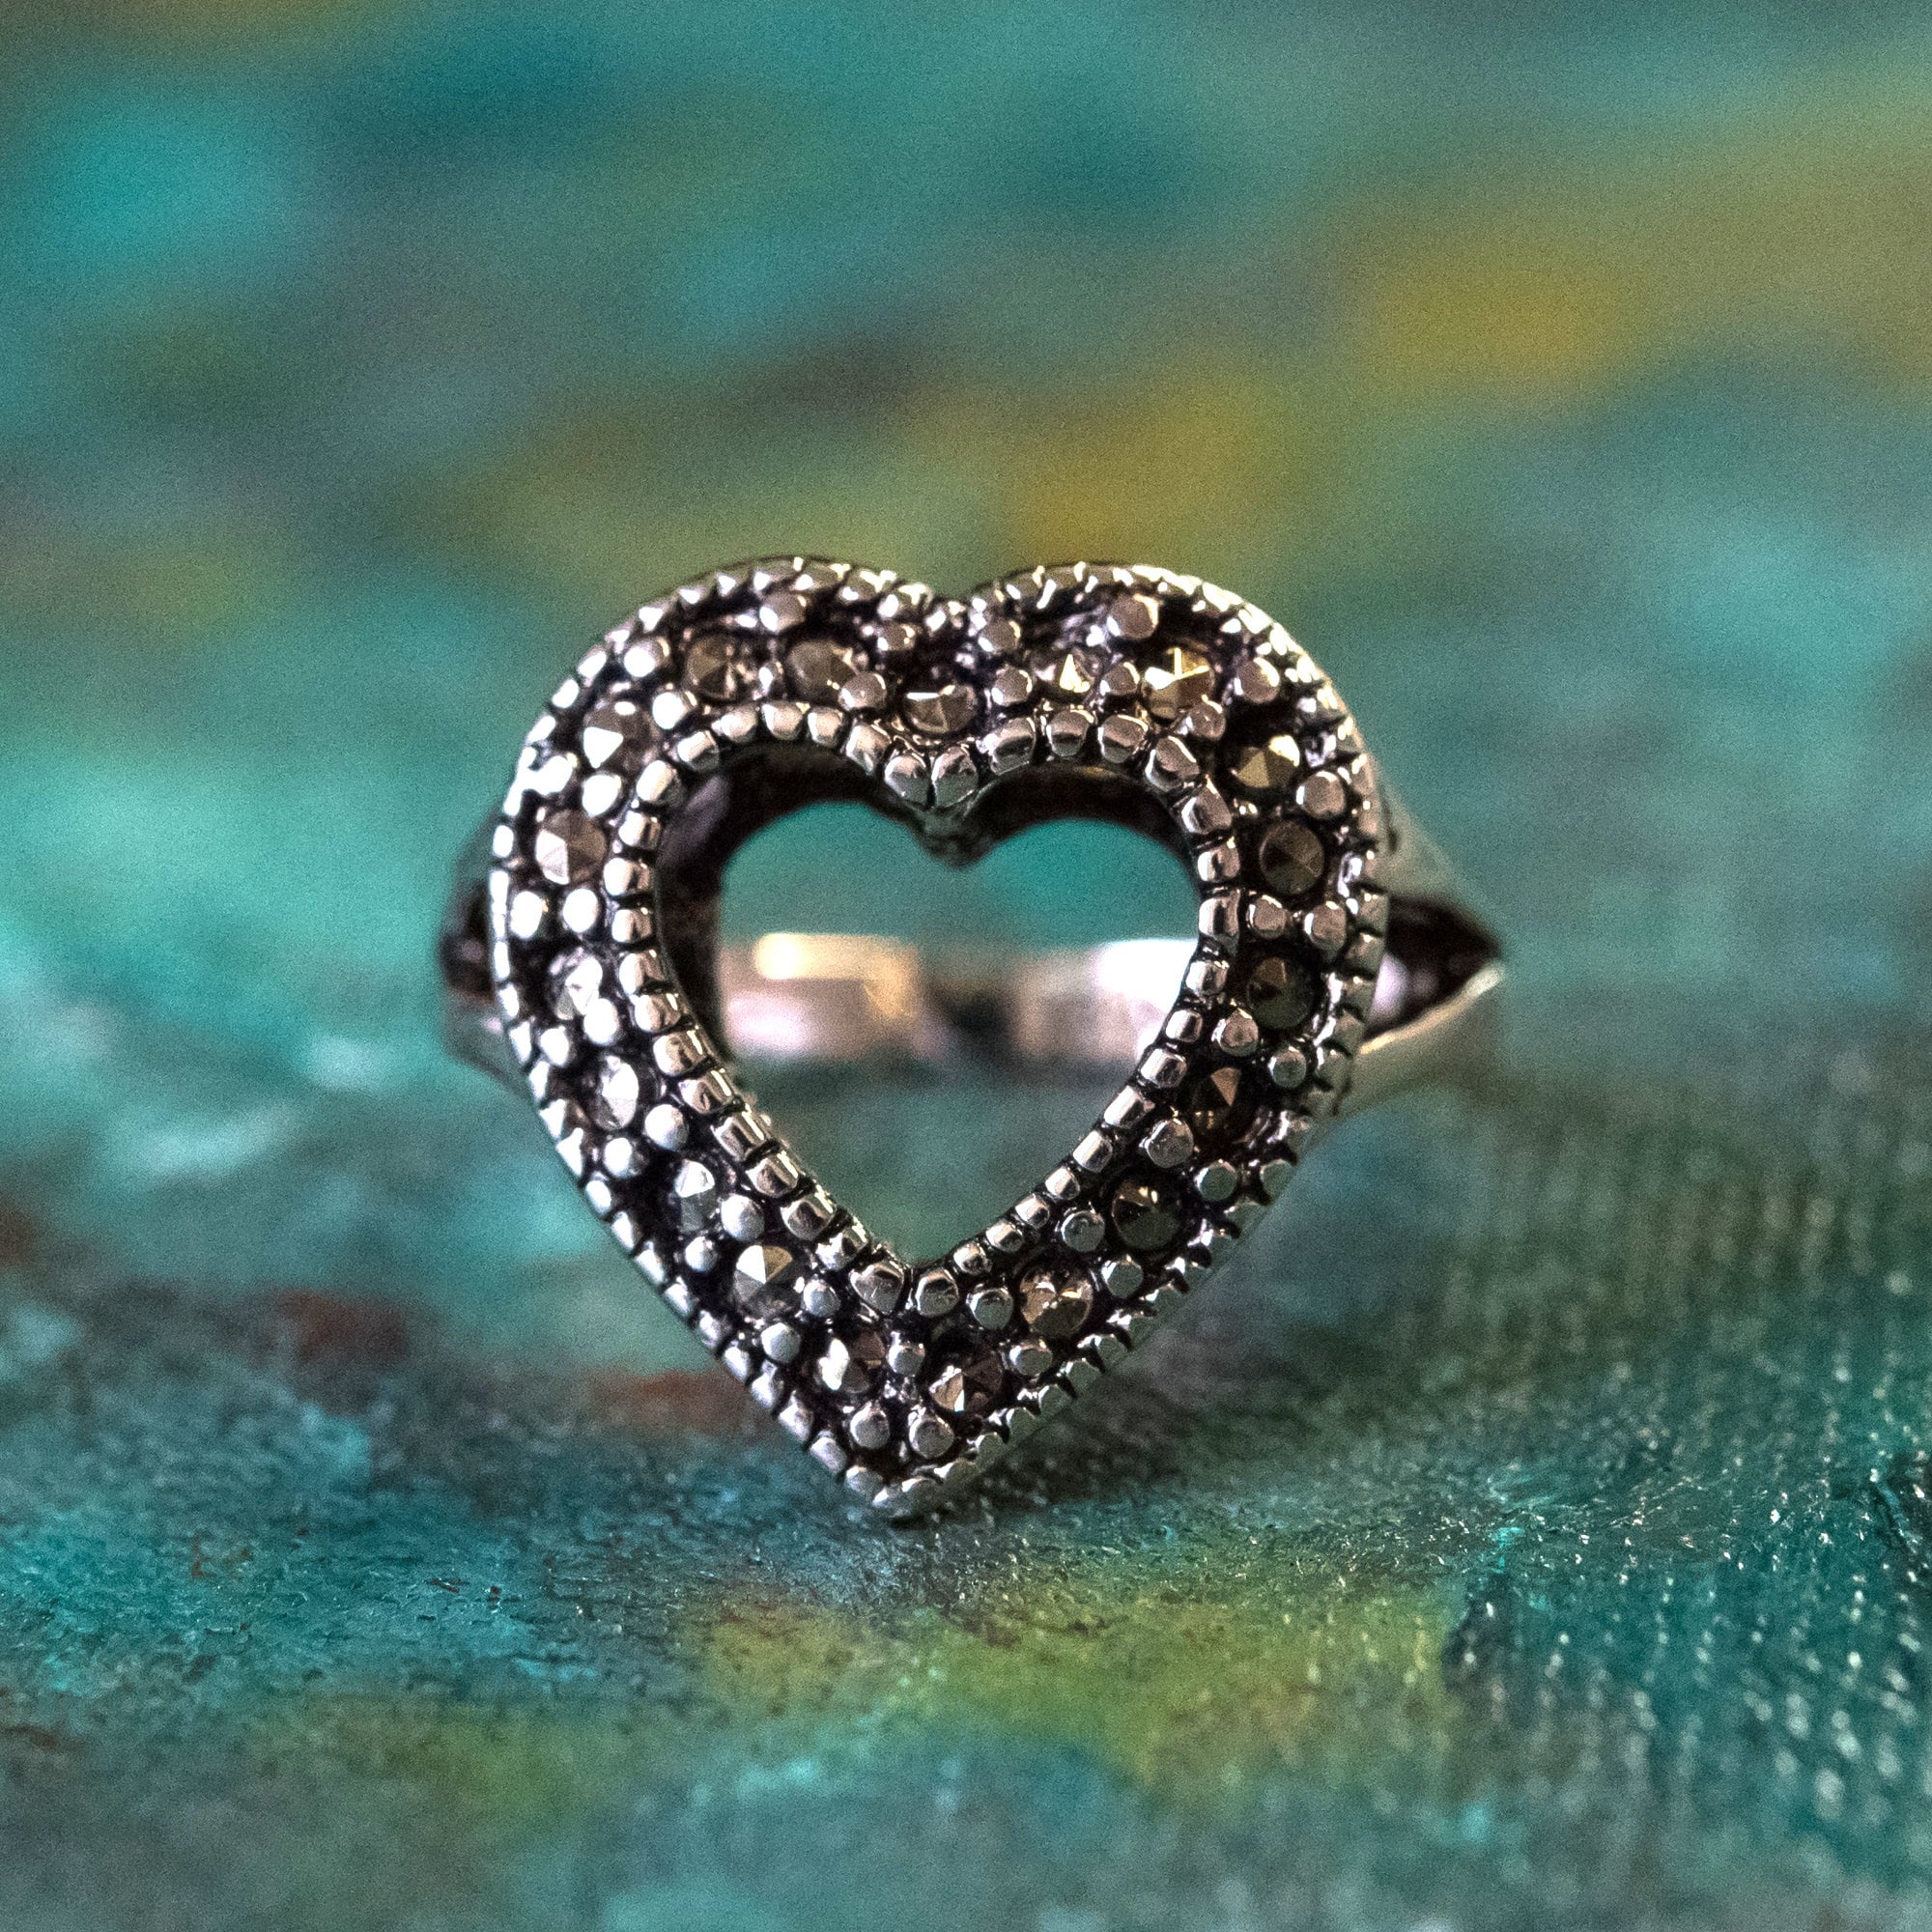 Silver Heart Ring by Carhartt Work In Progress on Sale